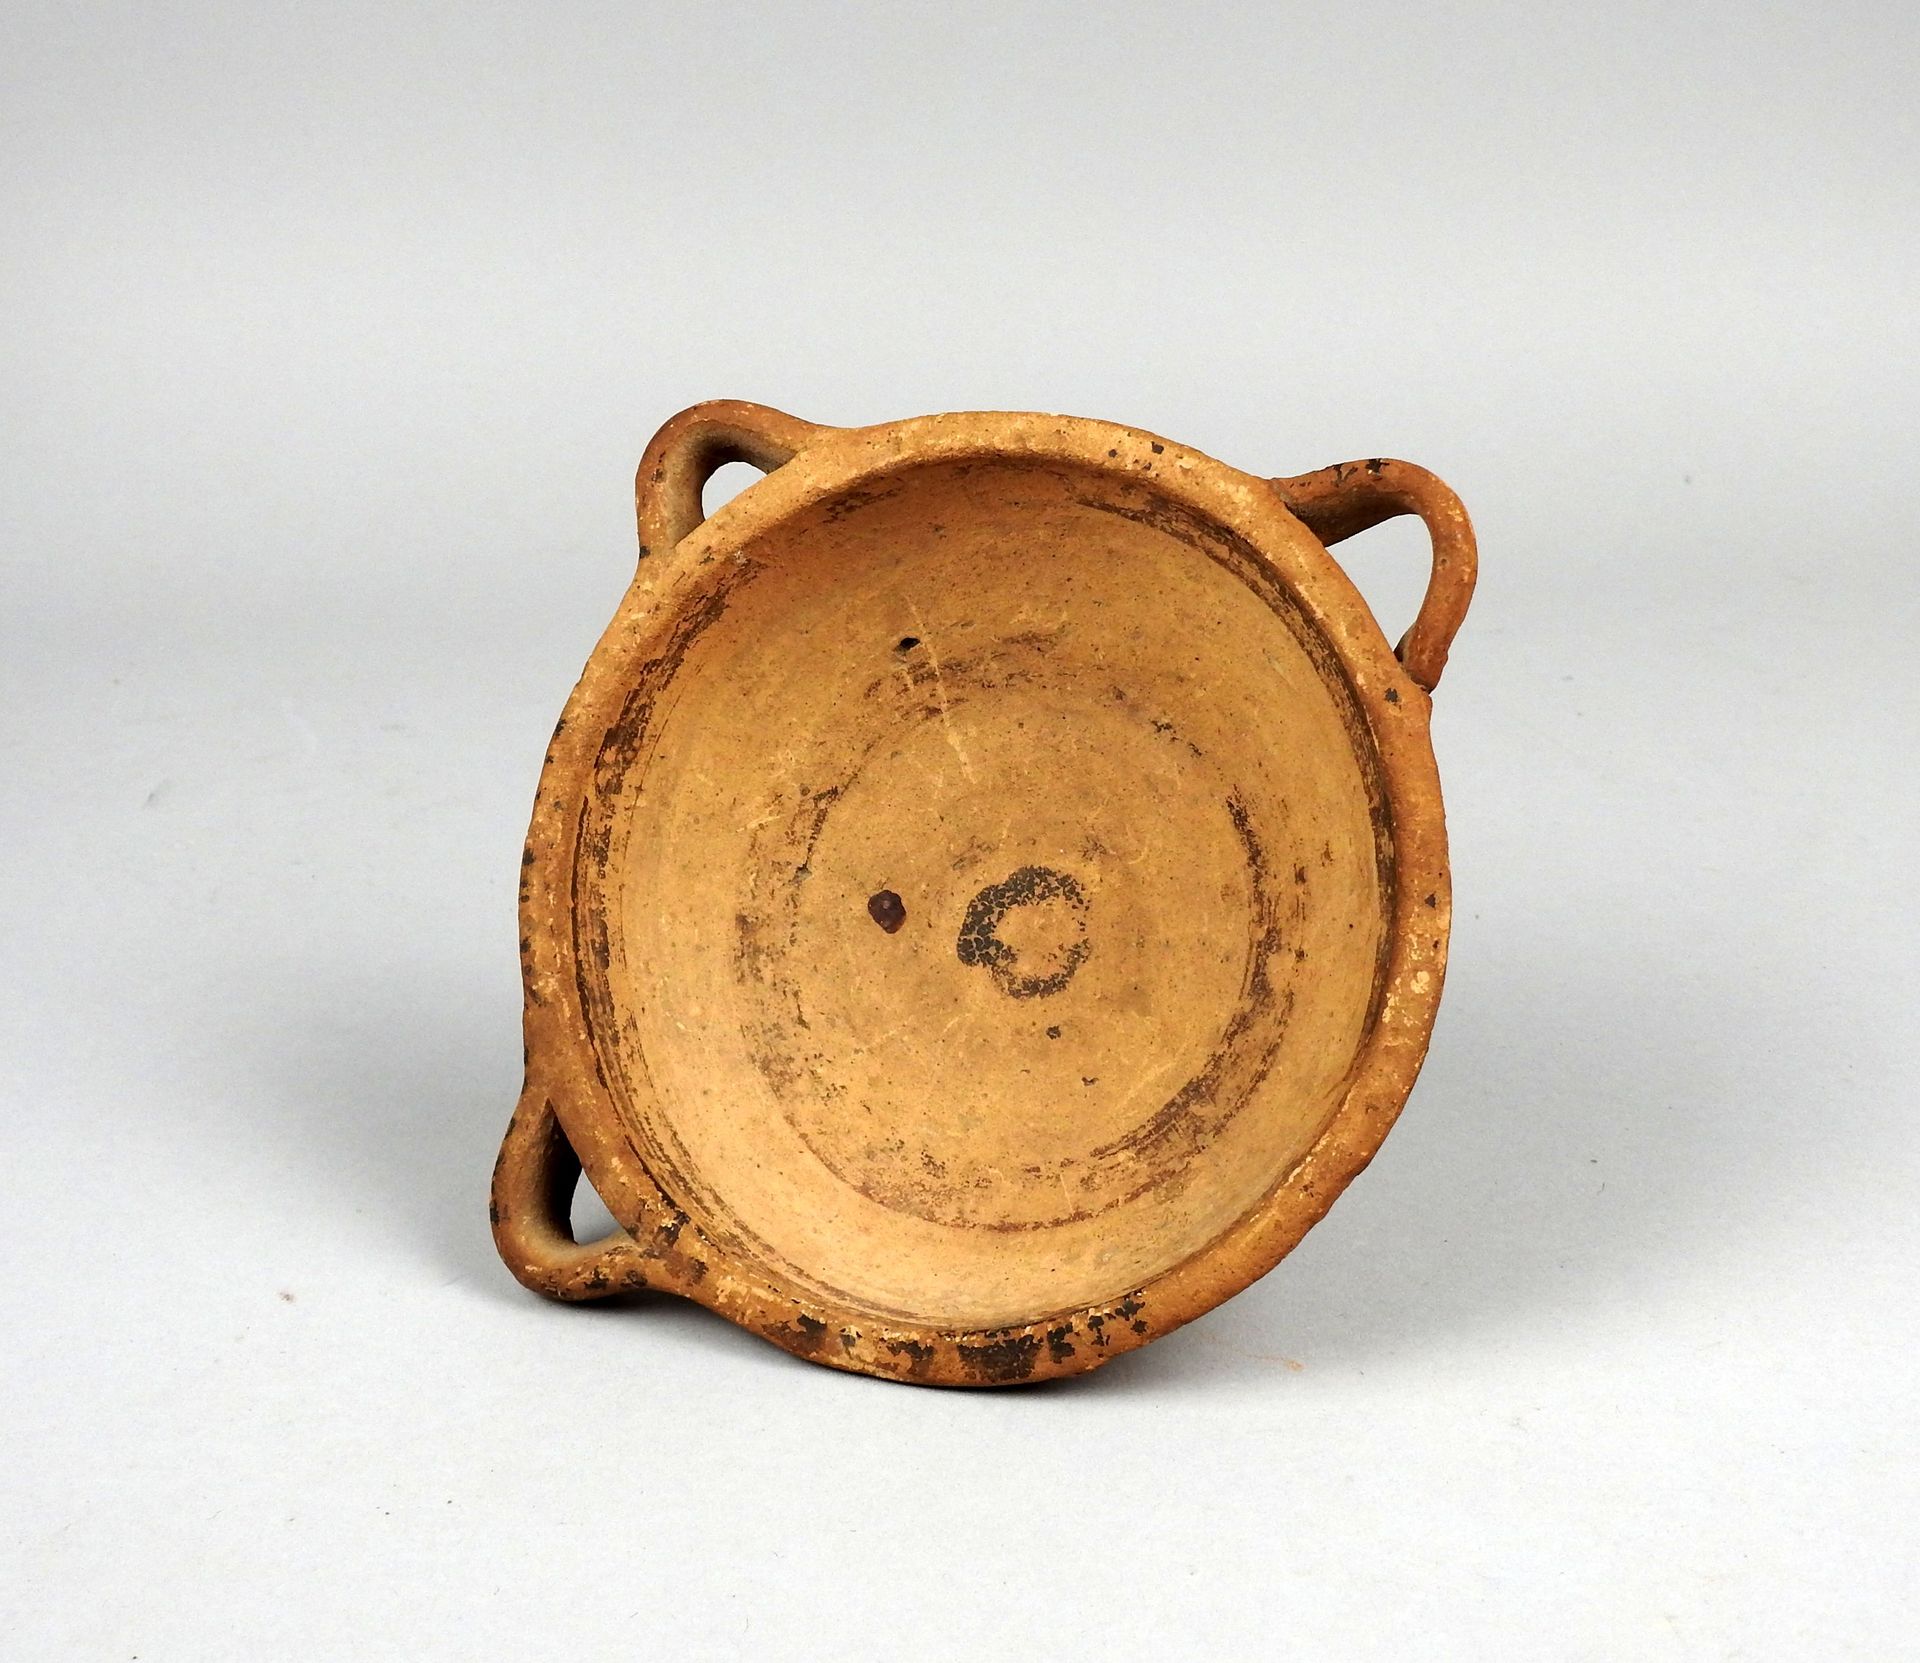 Null 杯子有三个把手和多色装饰

兵马俑15.5厘米事故和失踪

古代时期可能是希腊或塞浦路斯